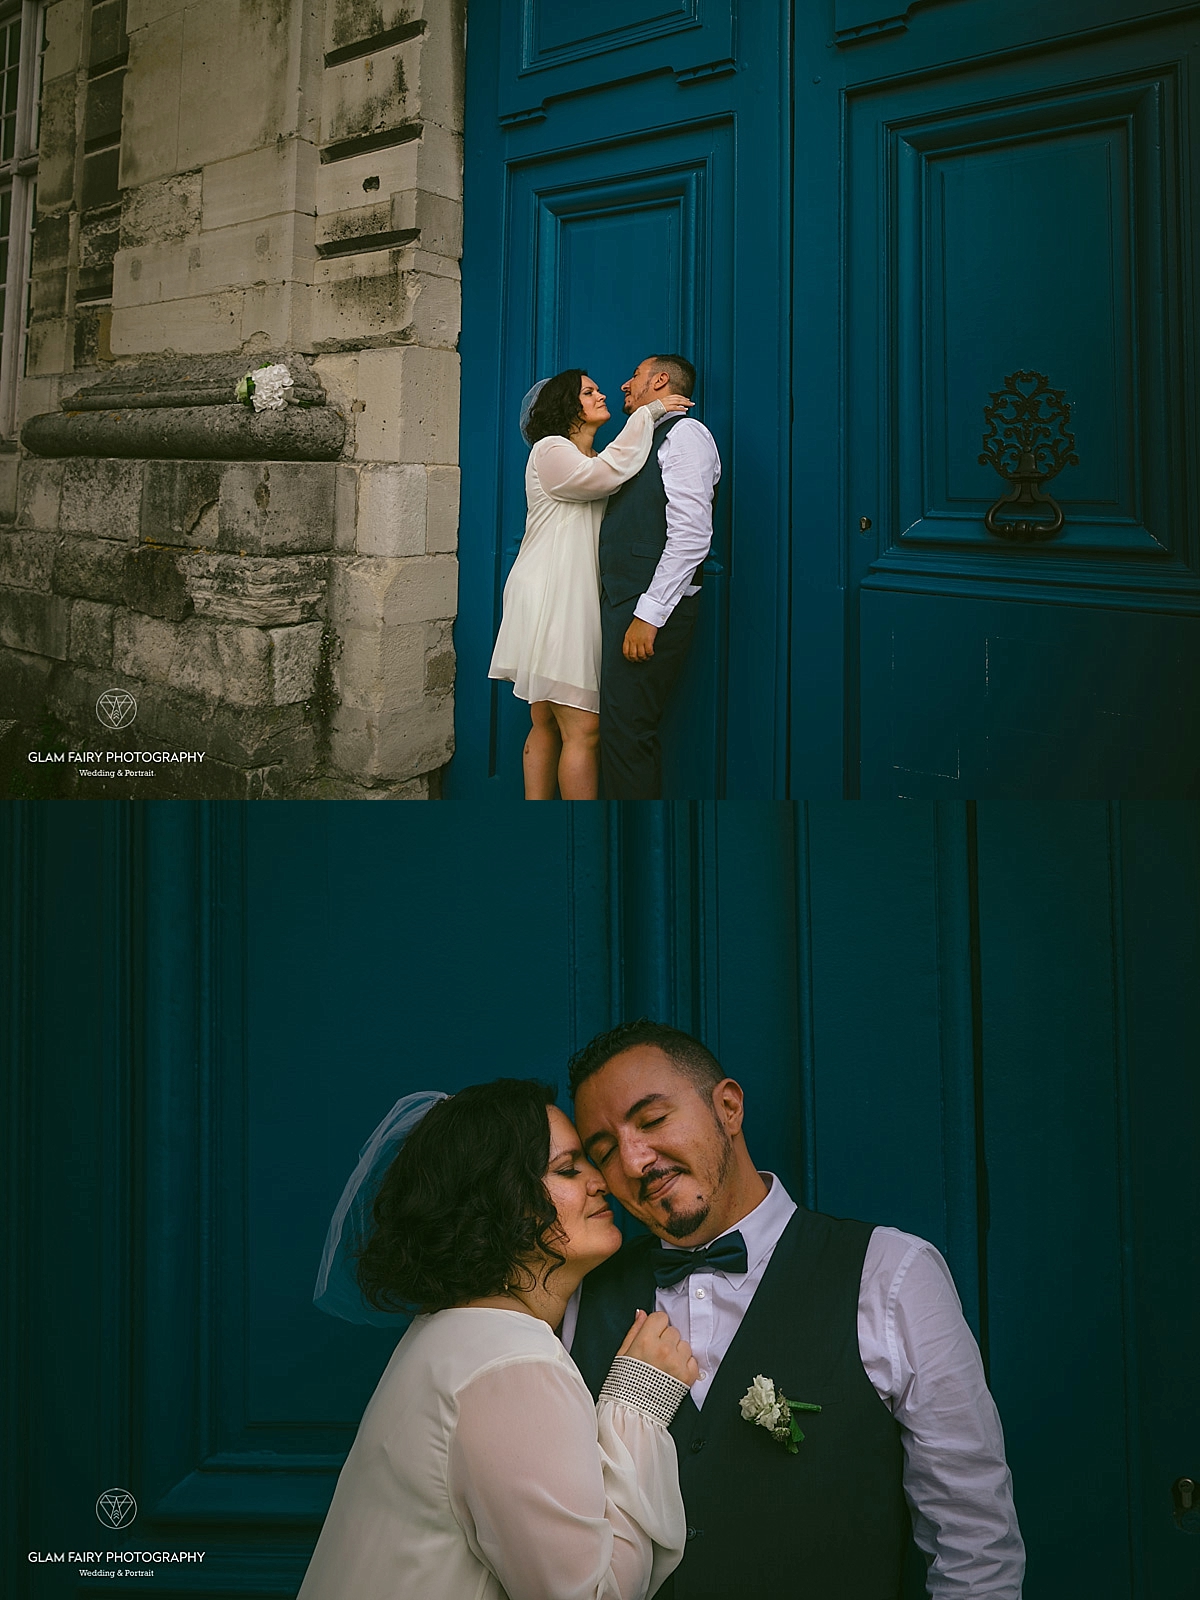 GlamFairyPhotography-mariage-a-la-marie-de-vincennes-ophelie_0081